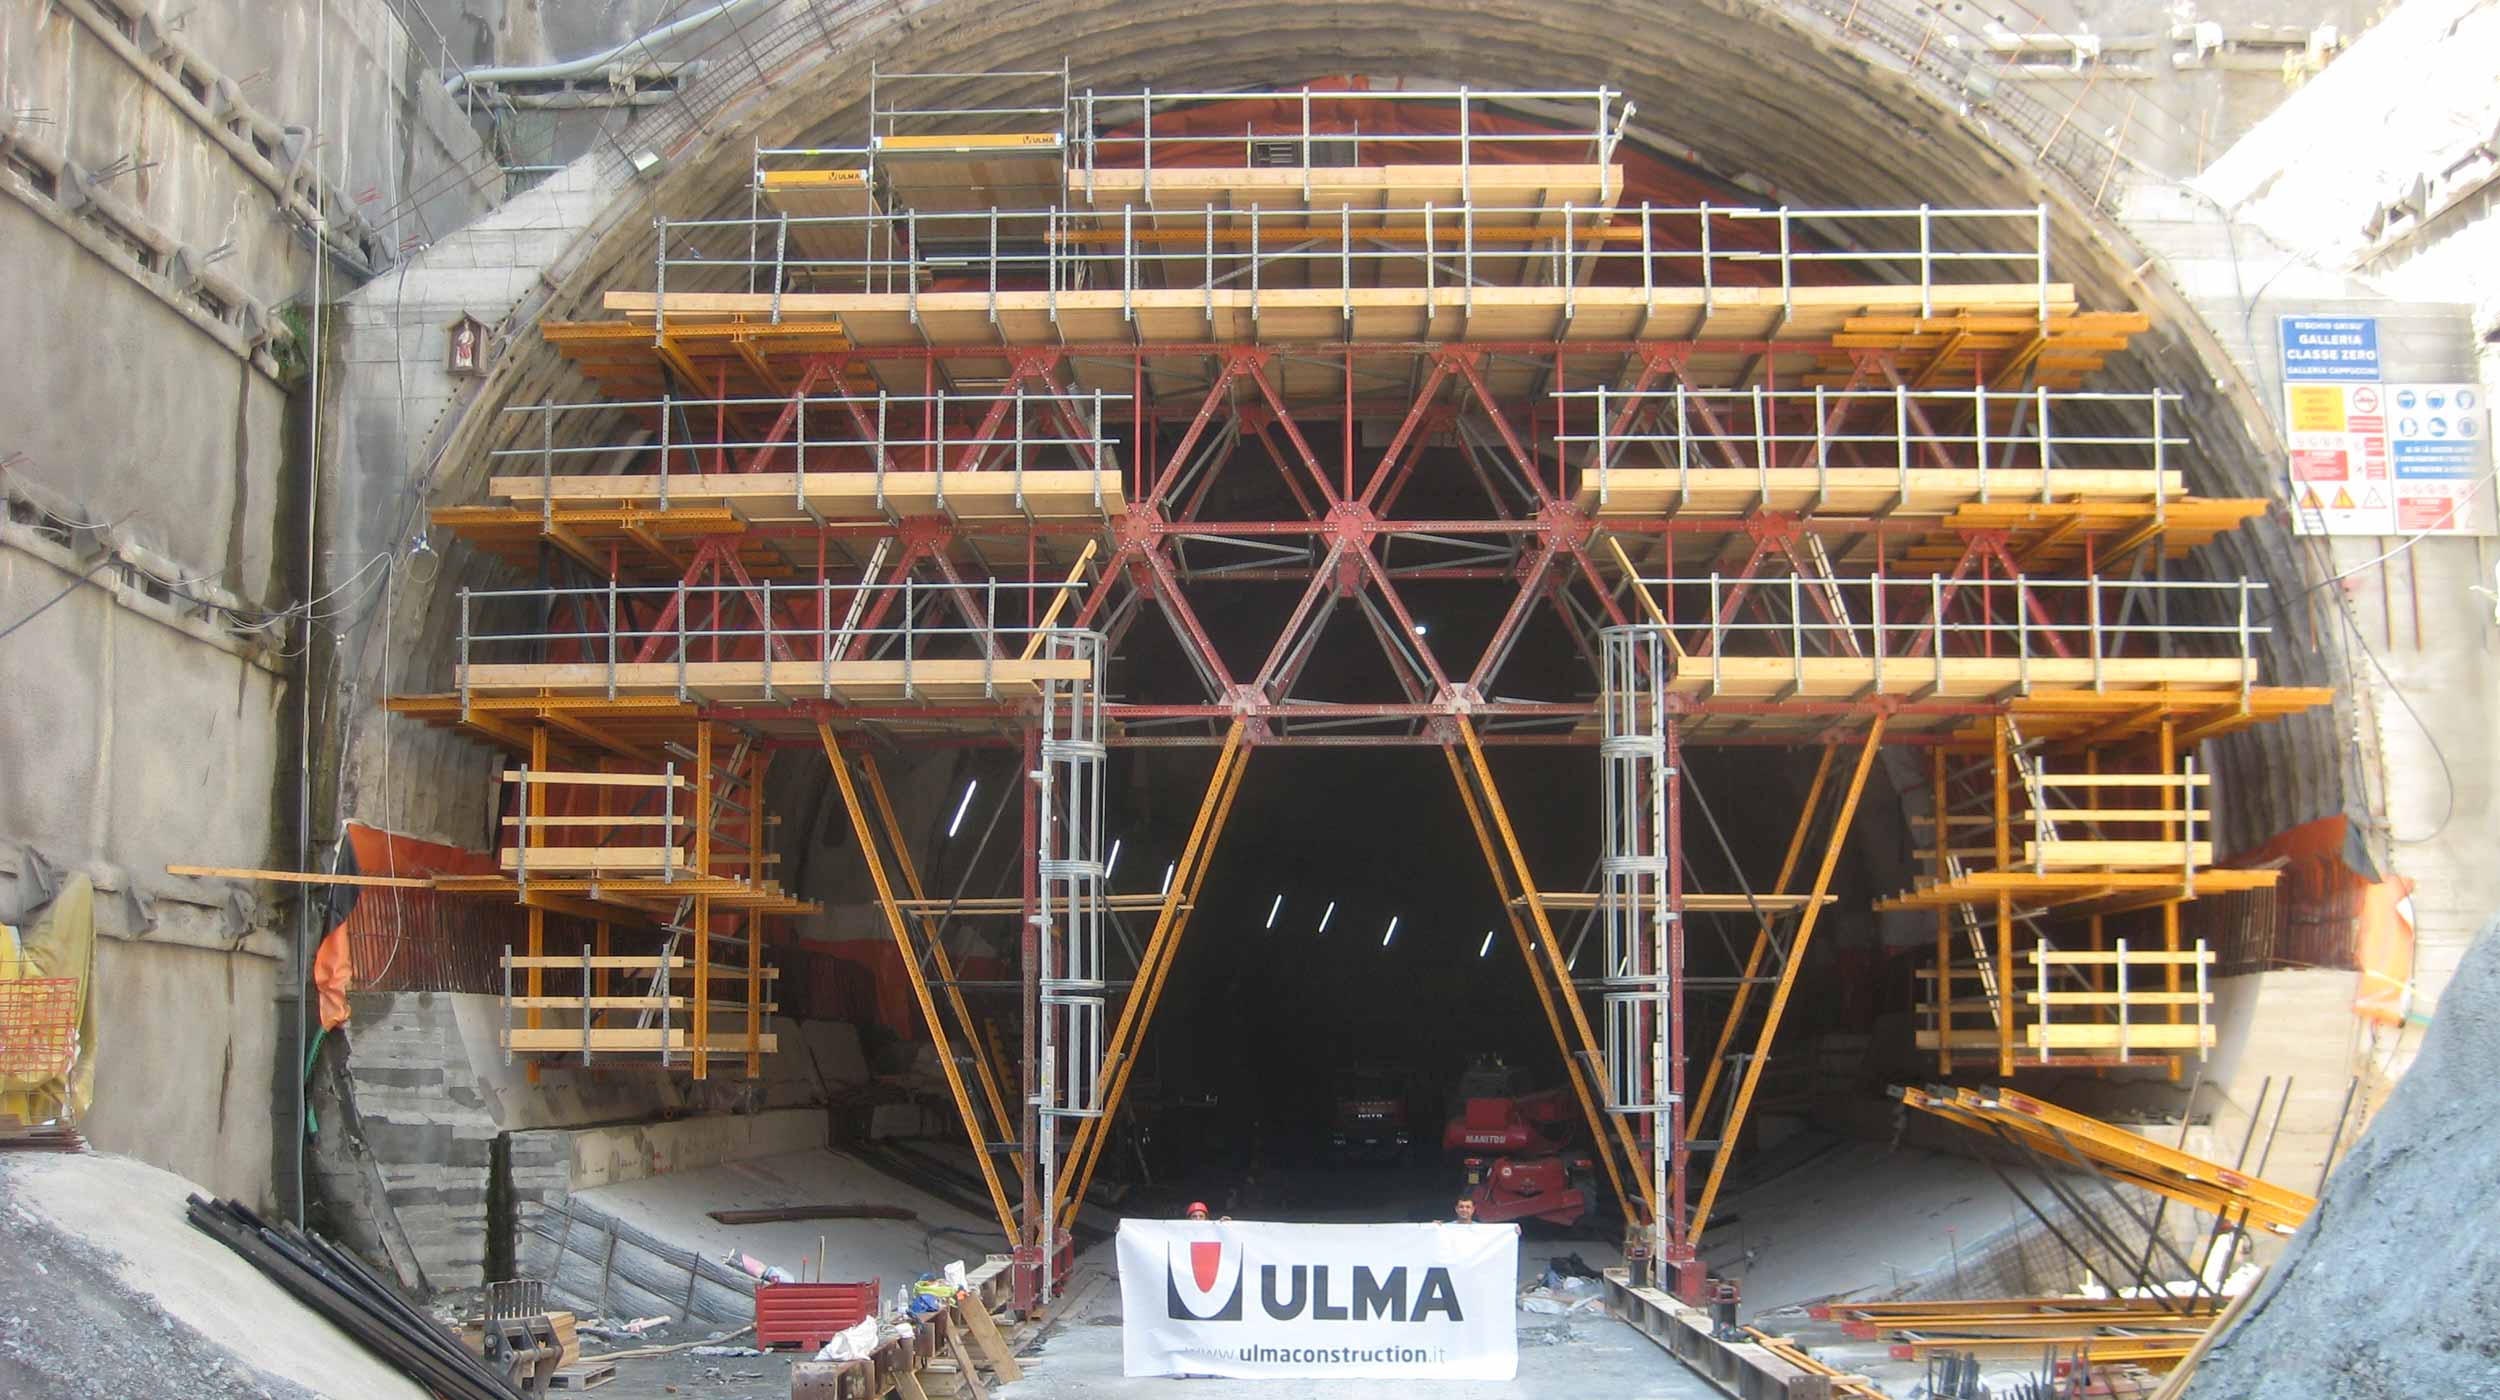 Ulma ha fornito il sistema MK come soluzione per il cantiere della Galleria Cappuccini: sistema noleggiabile che permette un avanzamento rapido dei lavori a costi ridotti